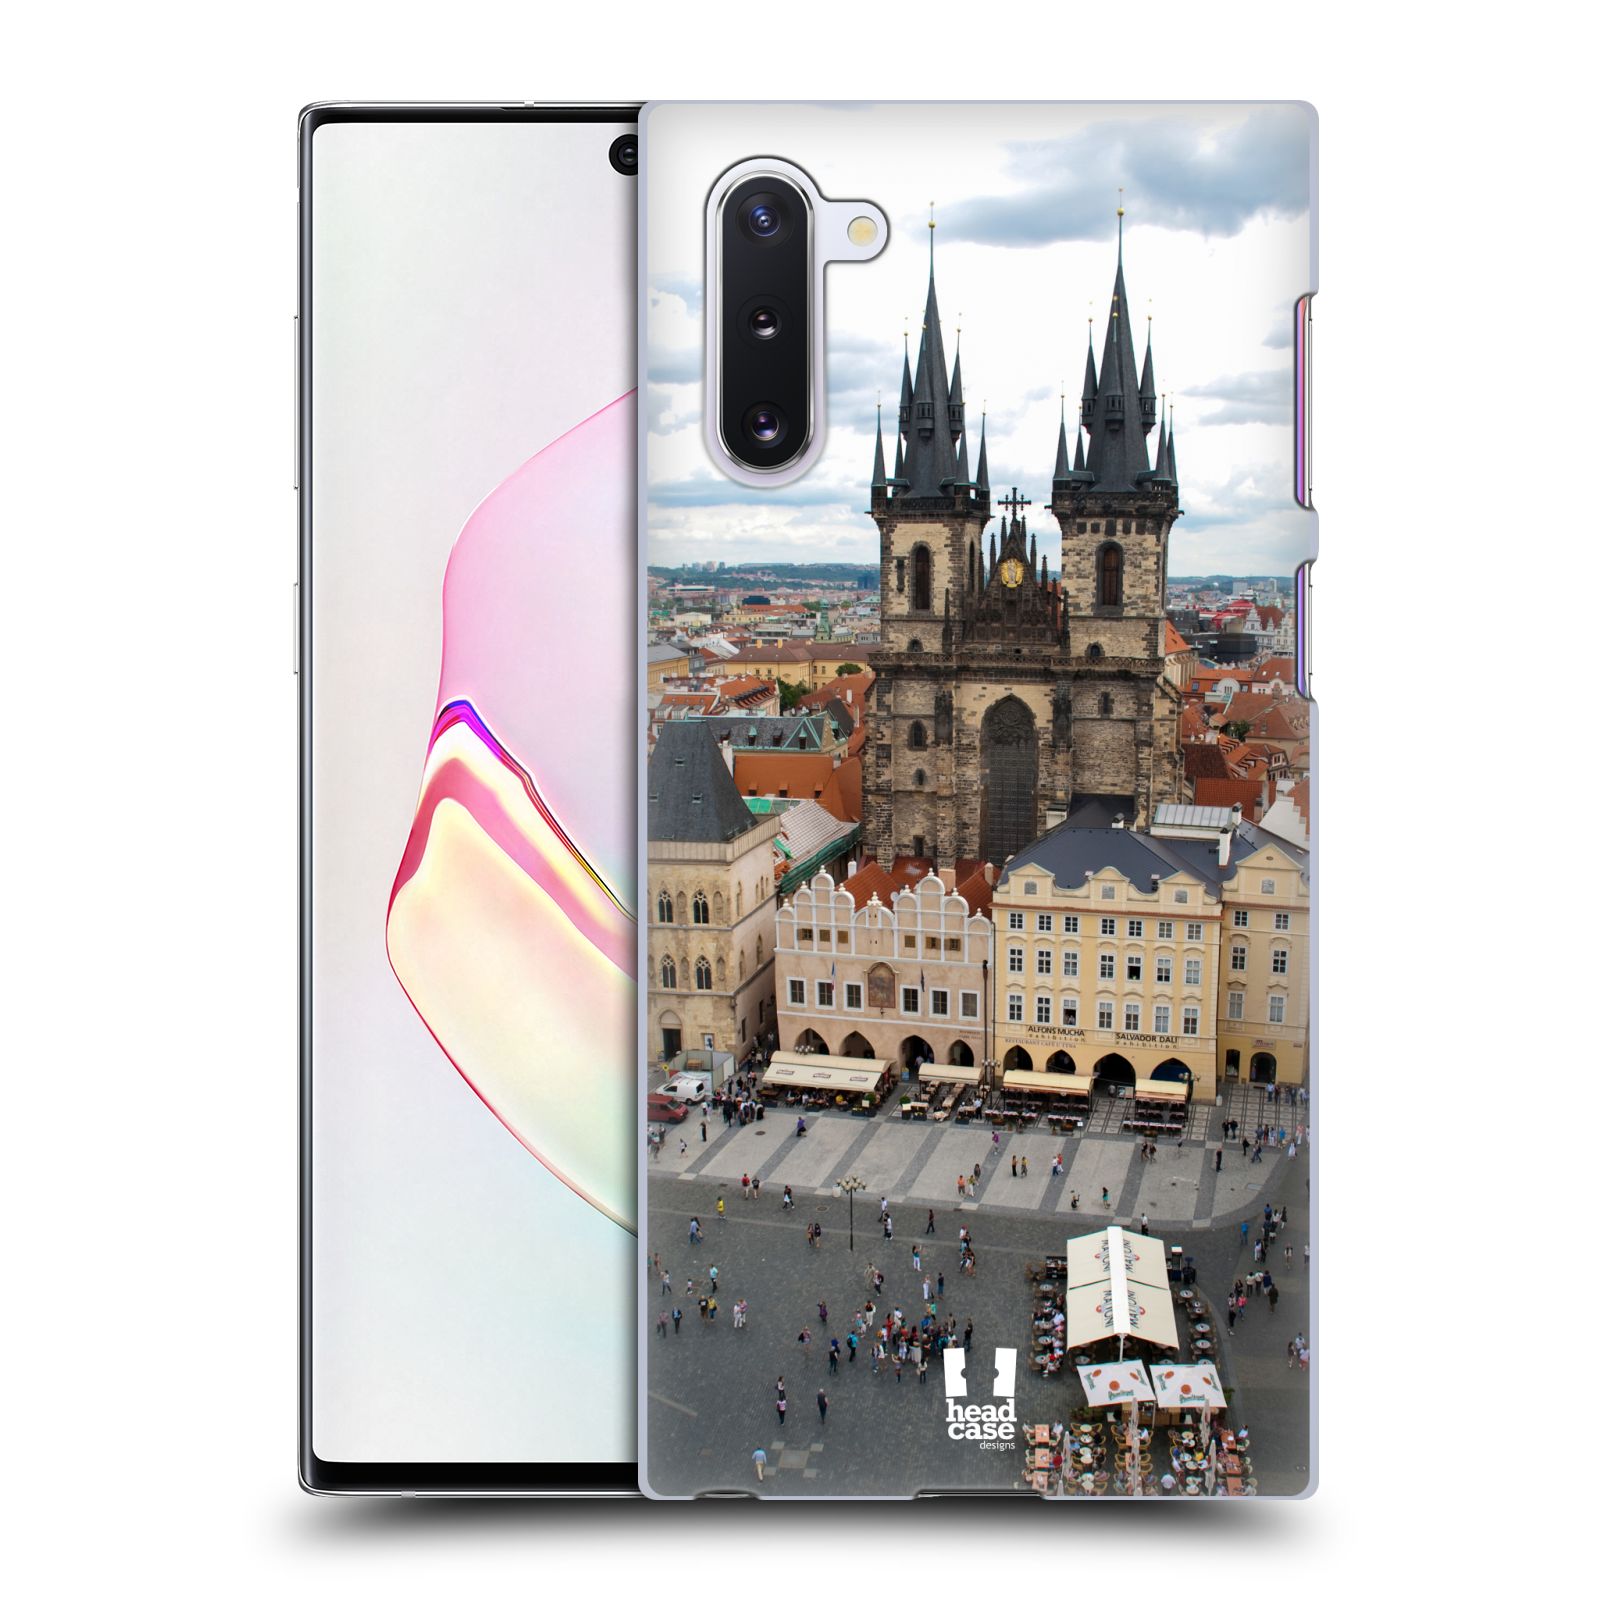 Pouzdro na mobil Samsung Galaxy Note 10 - HEAD CASE - vzor Města foto náměstí ČESKÁ REPUBLIKA, PRAHA, STAROMĚSTSKÉ NÁMĚSTÍ